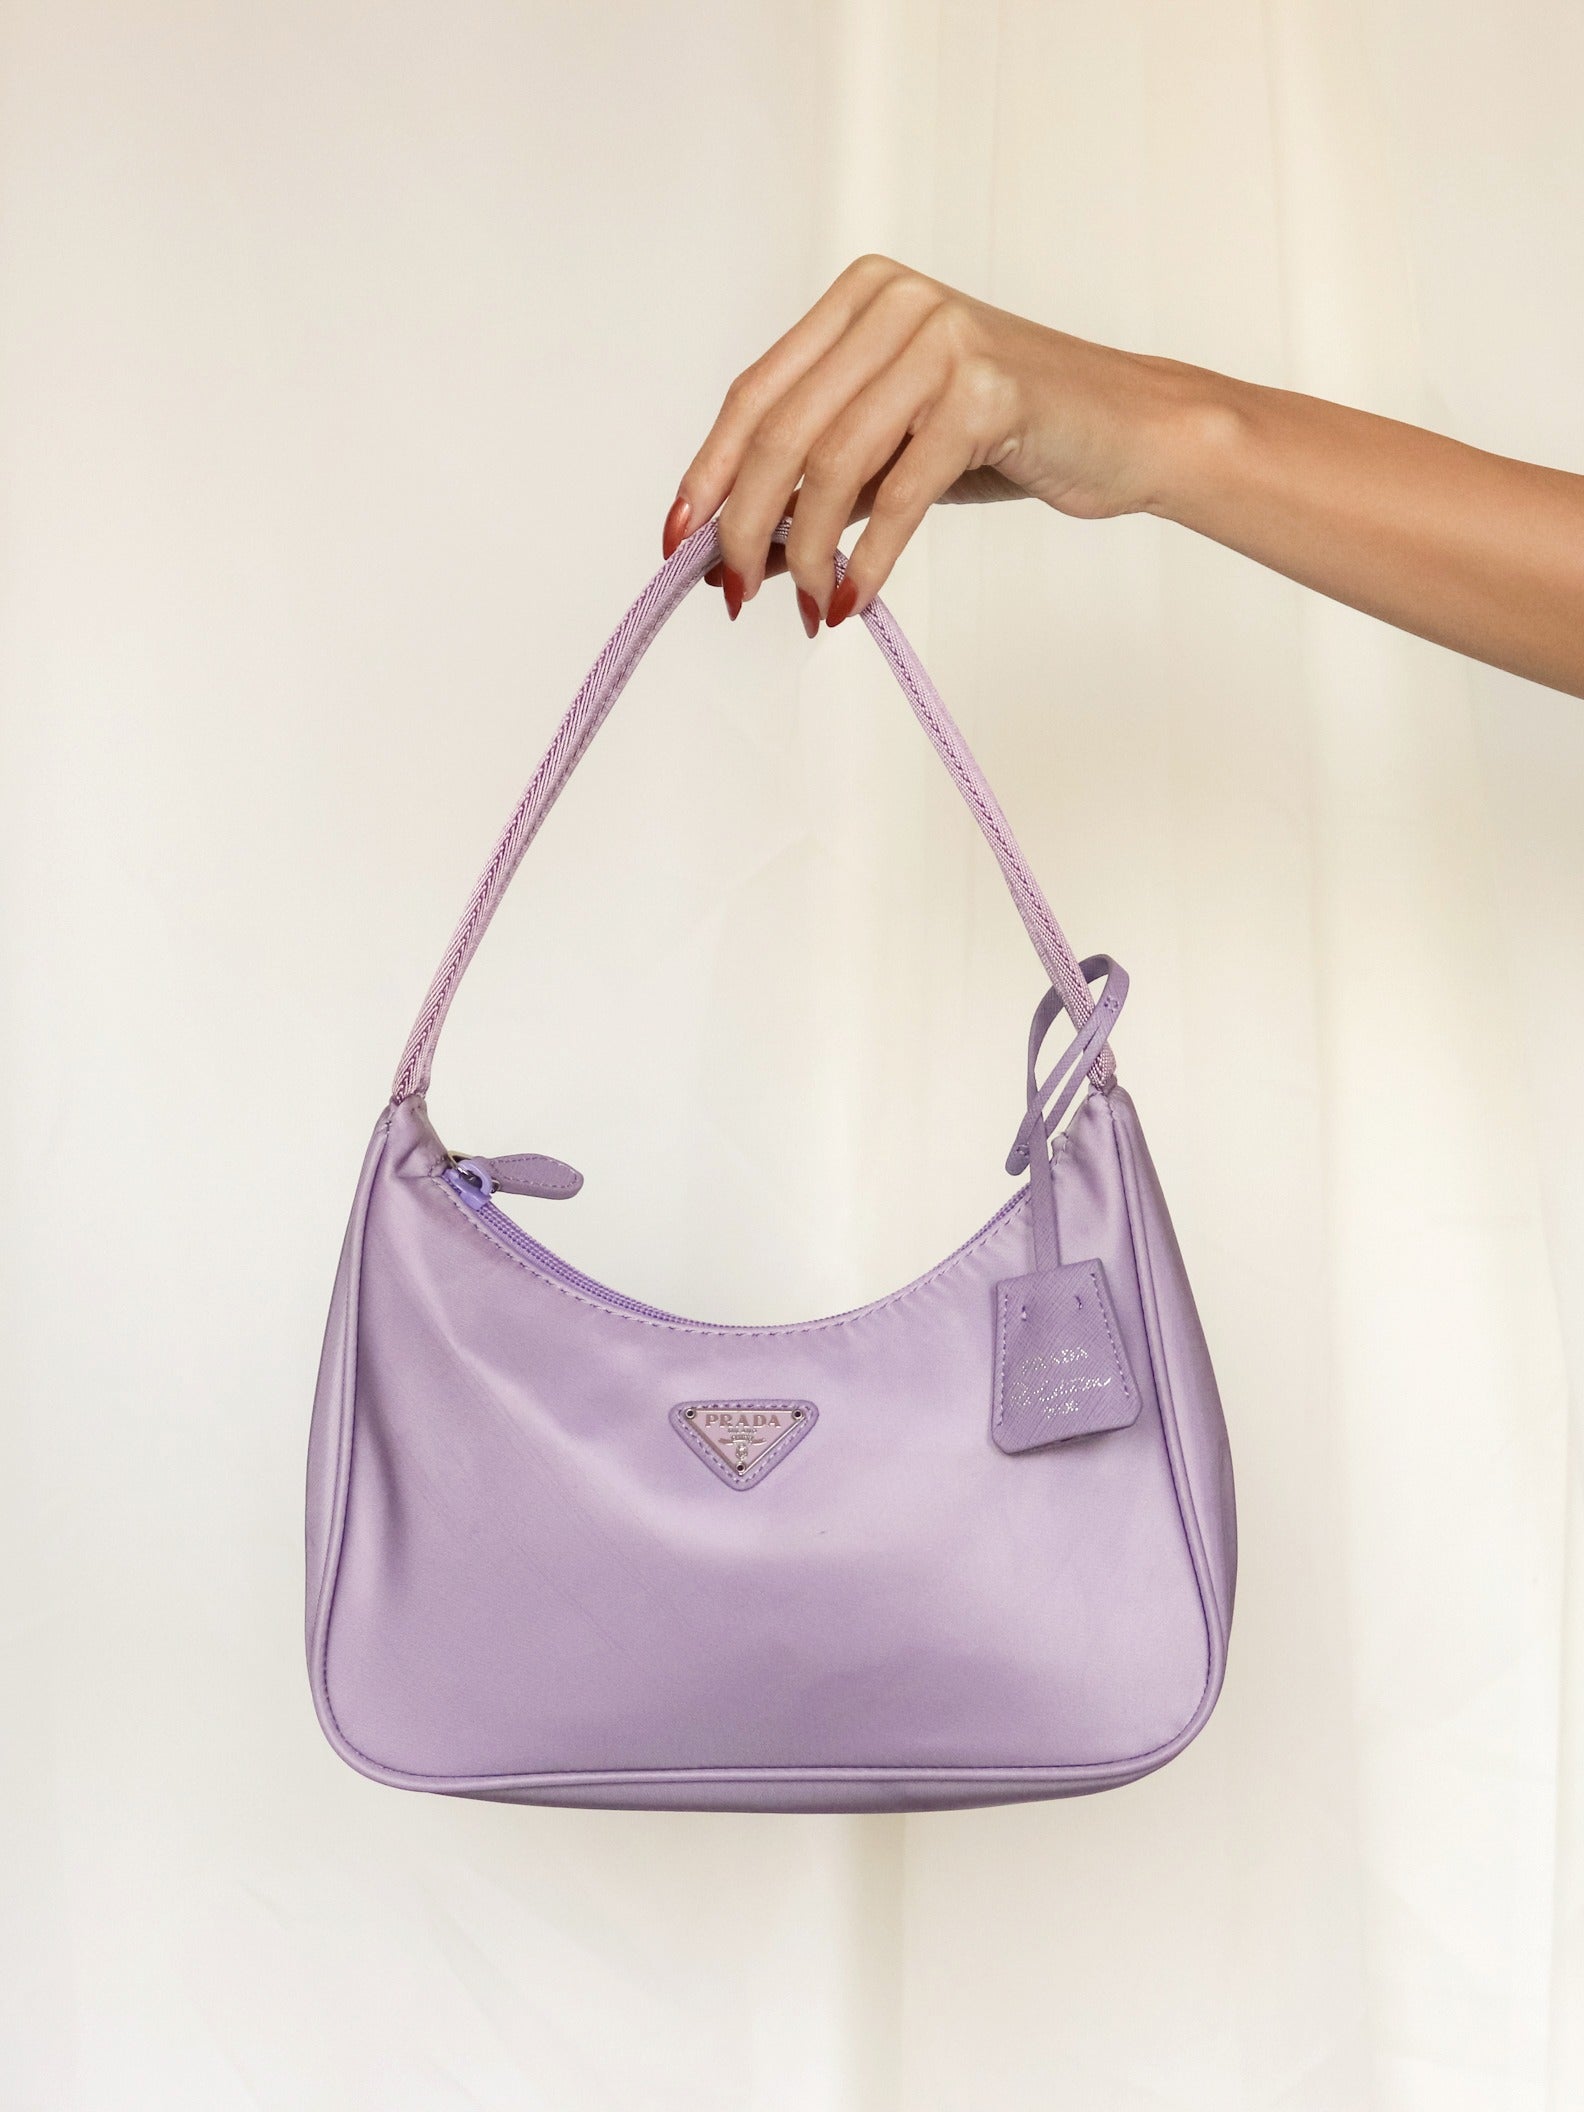 How to Authenticate Prada Handbags